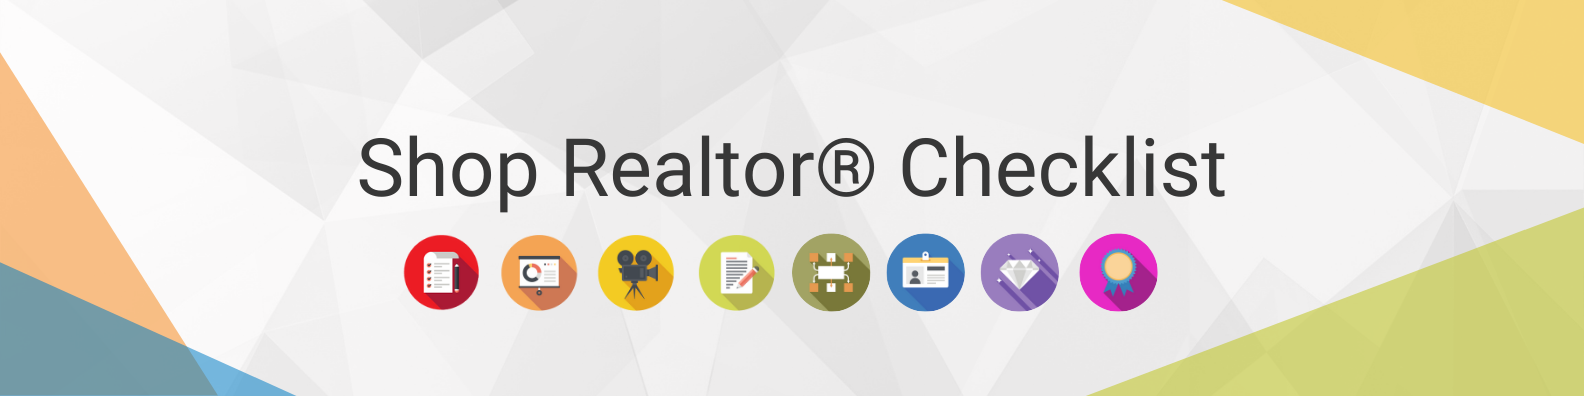 Shop Realtor® Checklist (2)